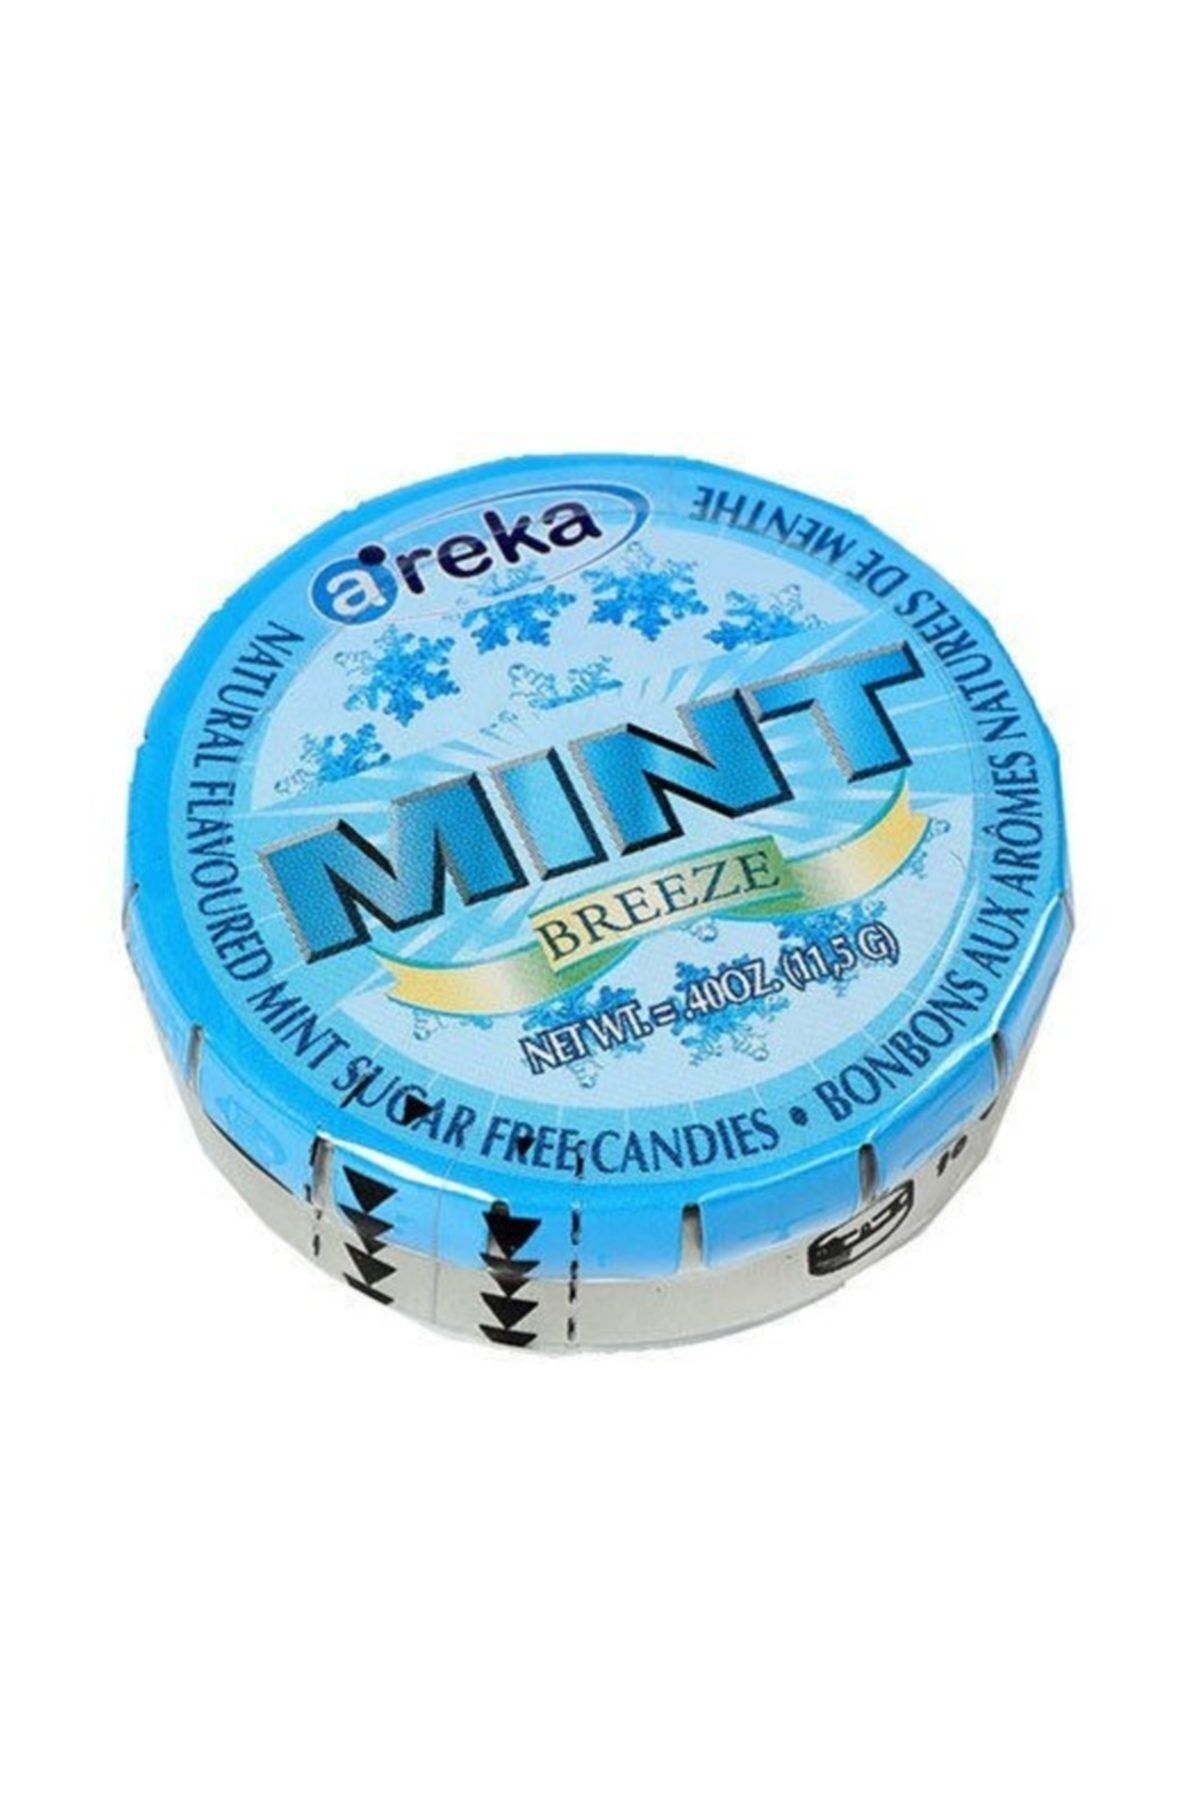 Areka Mint Naneli Şeker 11,5 Gr